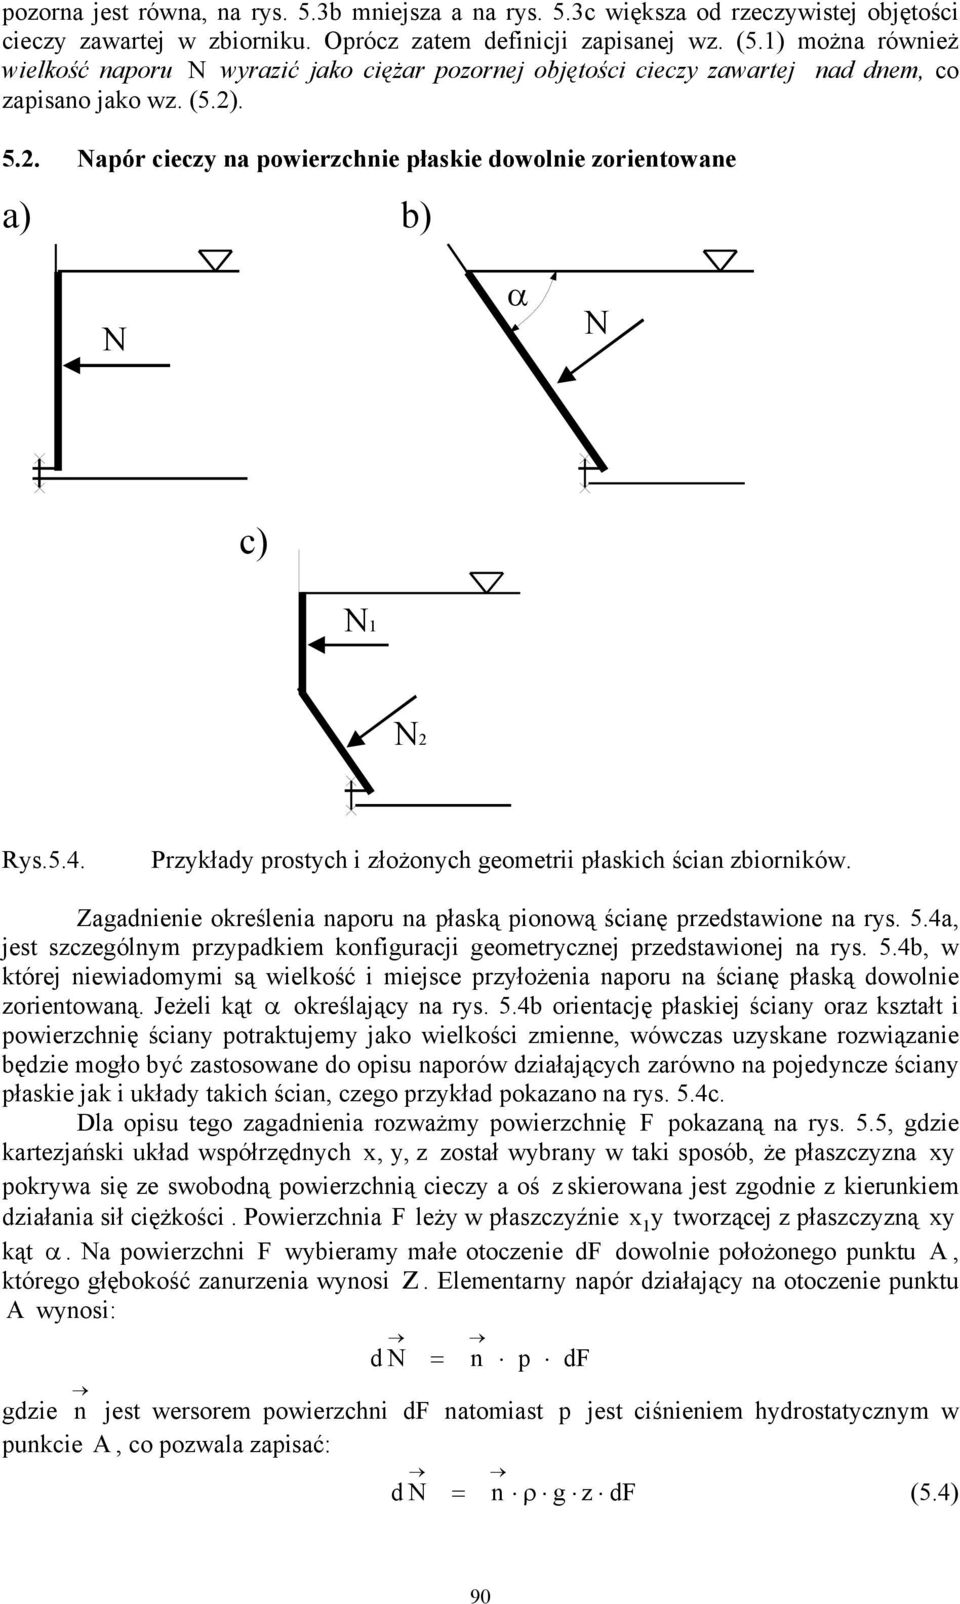 Prkład prostch i łożonch geometrii płaskich ścian biorników. Zagadnienie określenia naporu na płaską pionową ścianę predstawione na rs. 5.